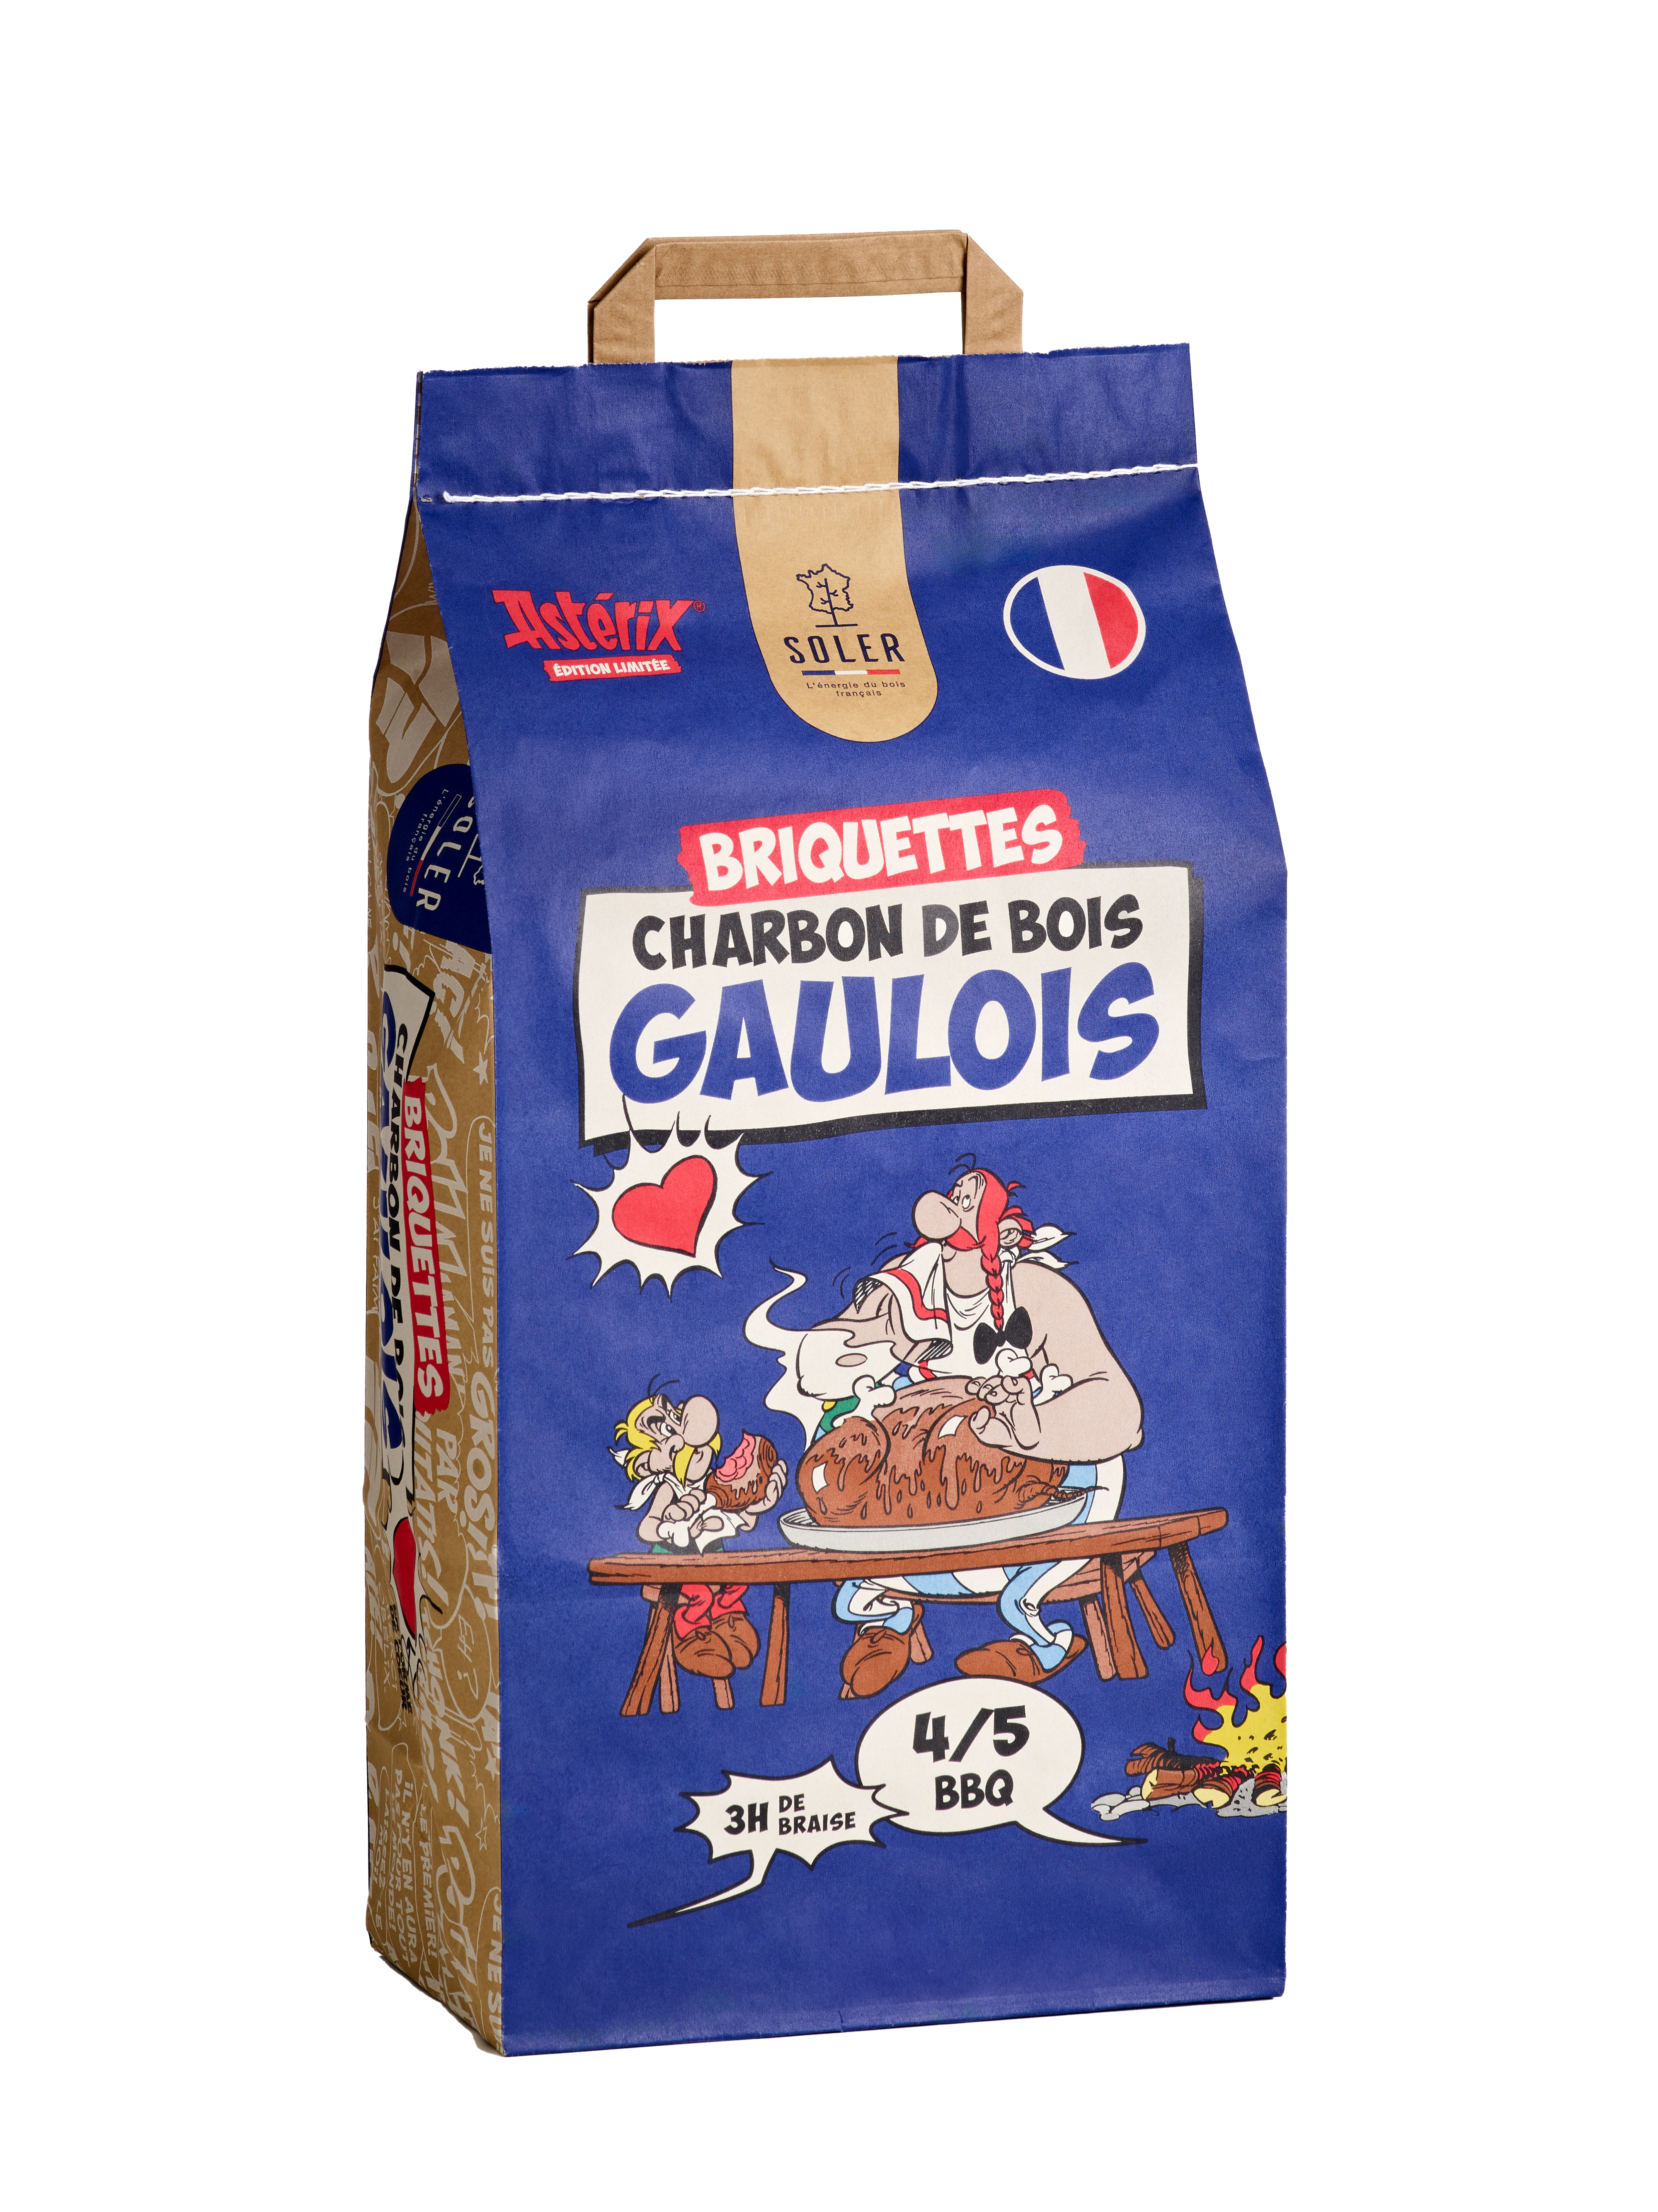 Charbon de bois Gaulois Briquettes (5 Kg)